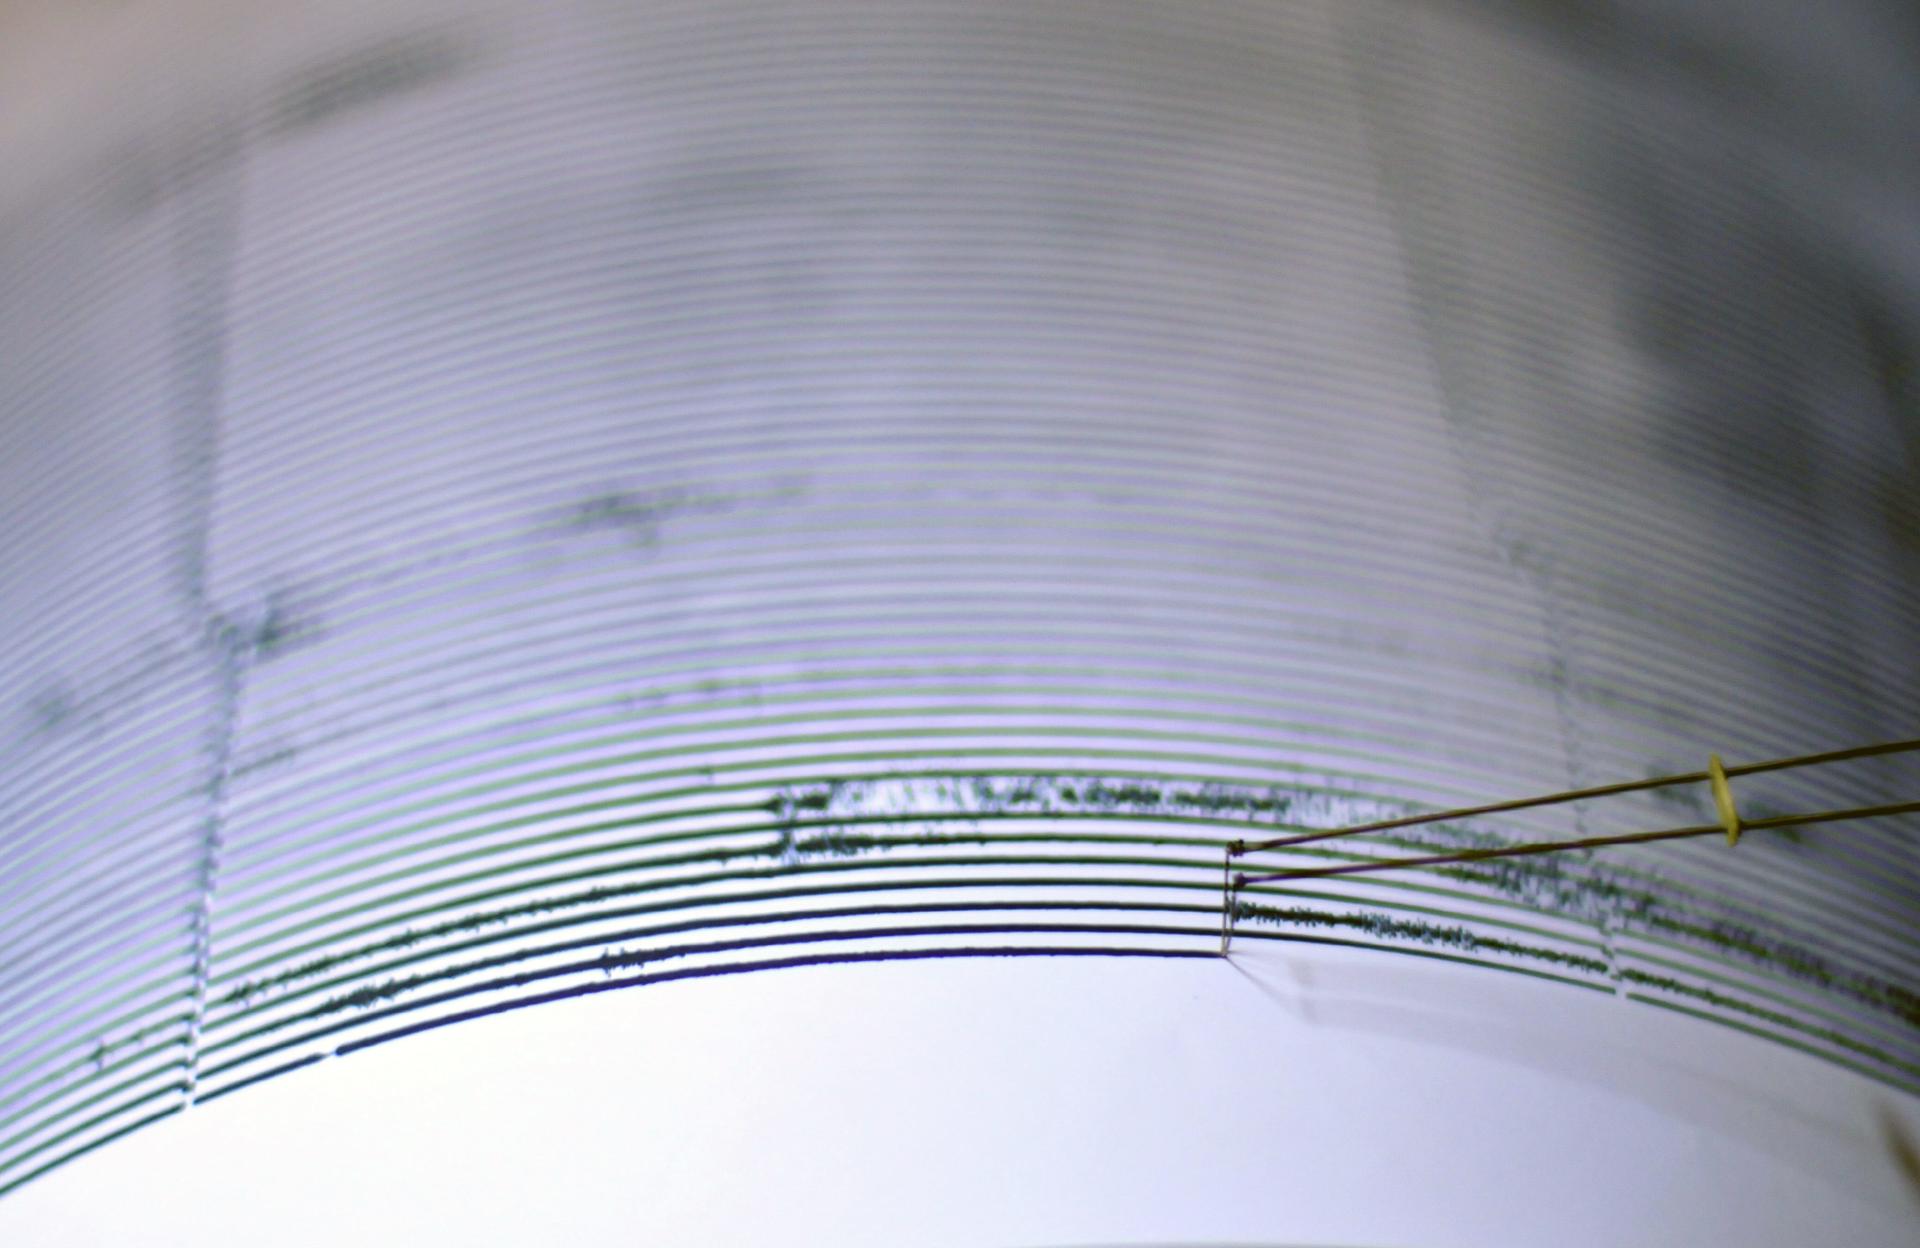 Detalle de un sismógrafo en una imagen de archivo. EFE/Ulises Rodríguez